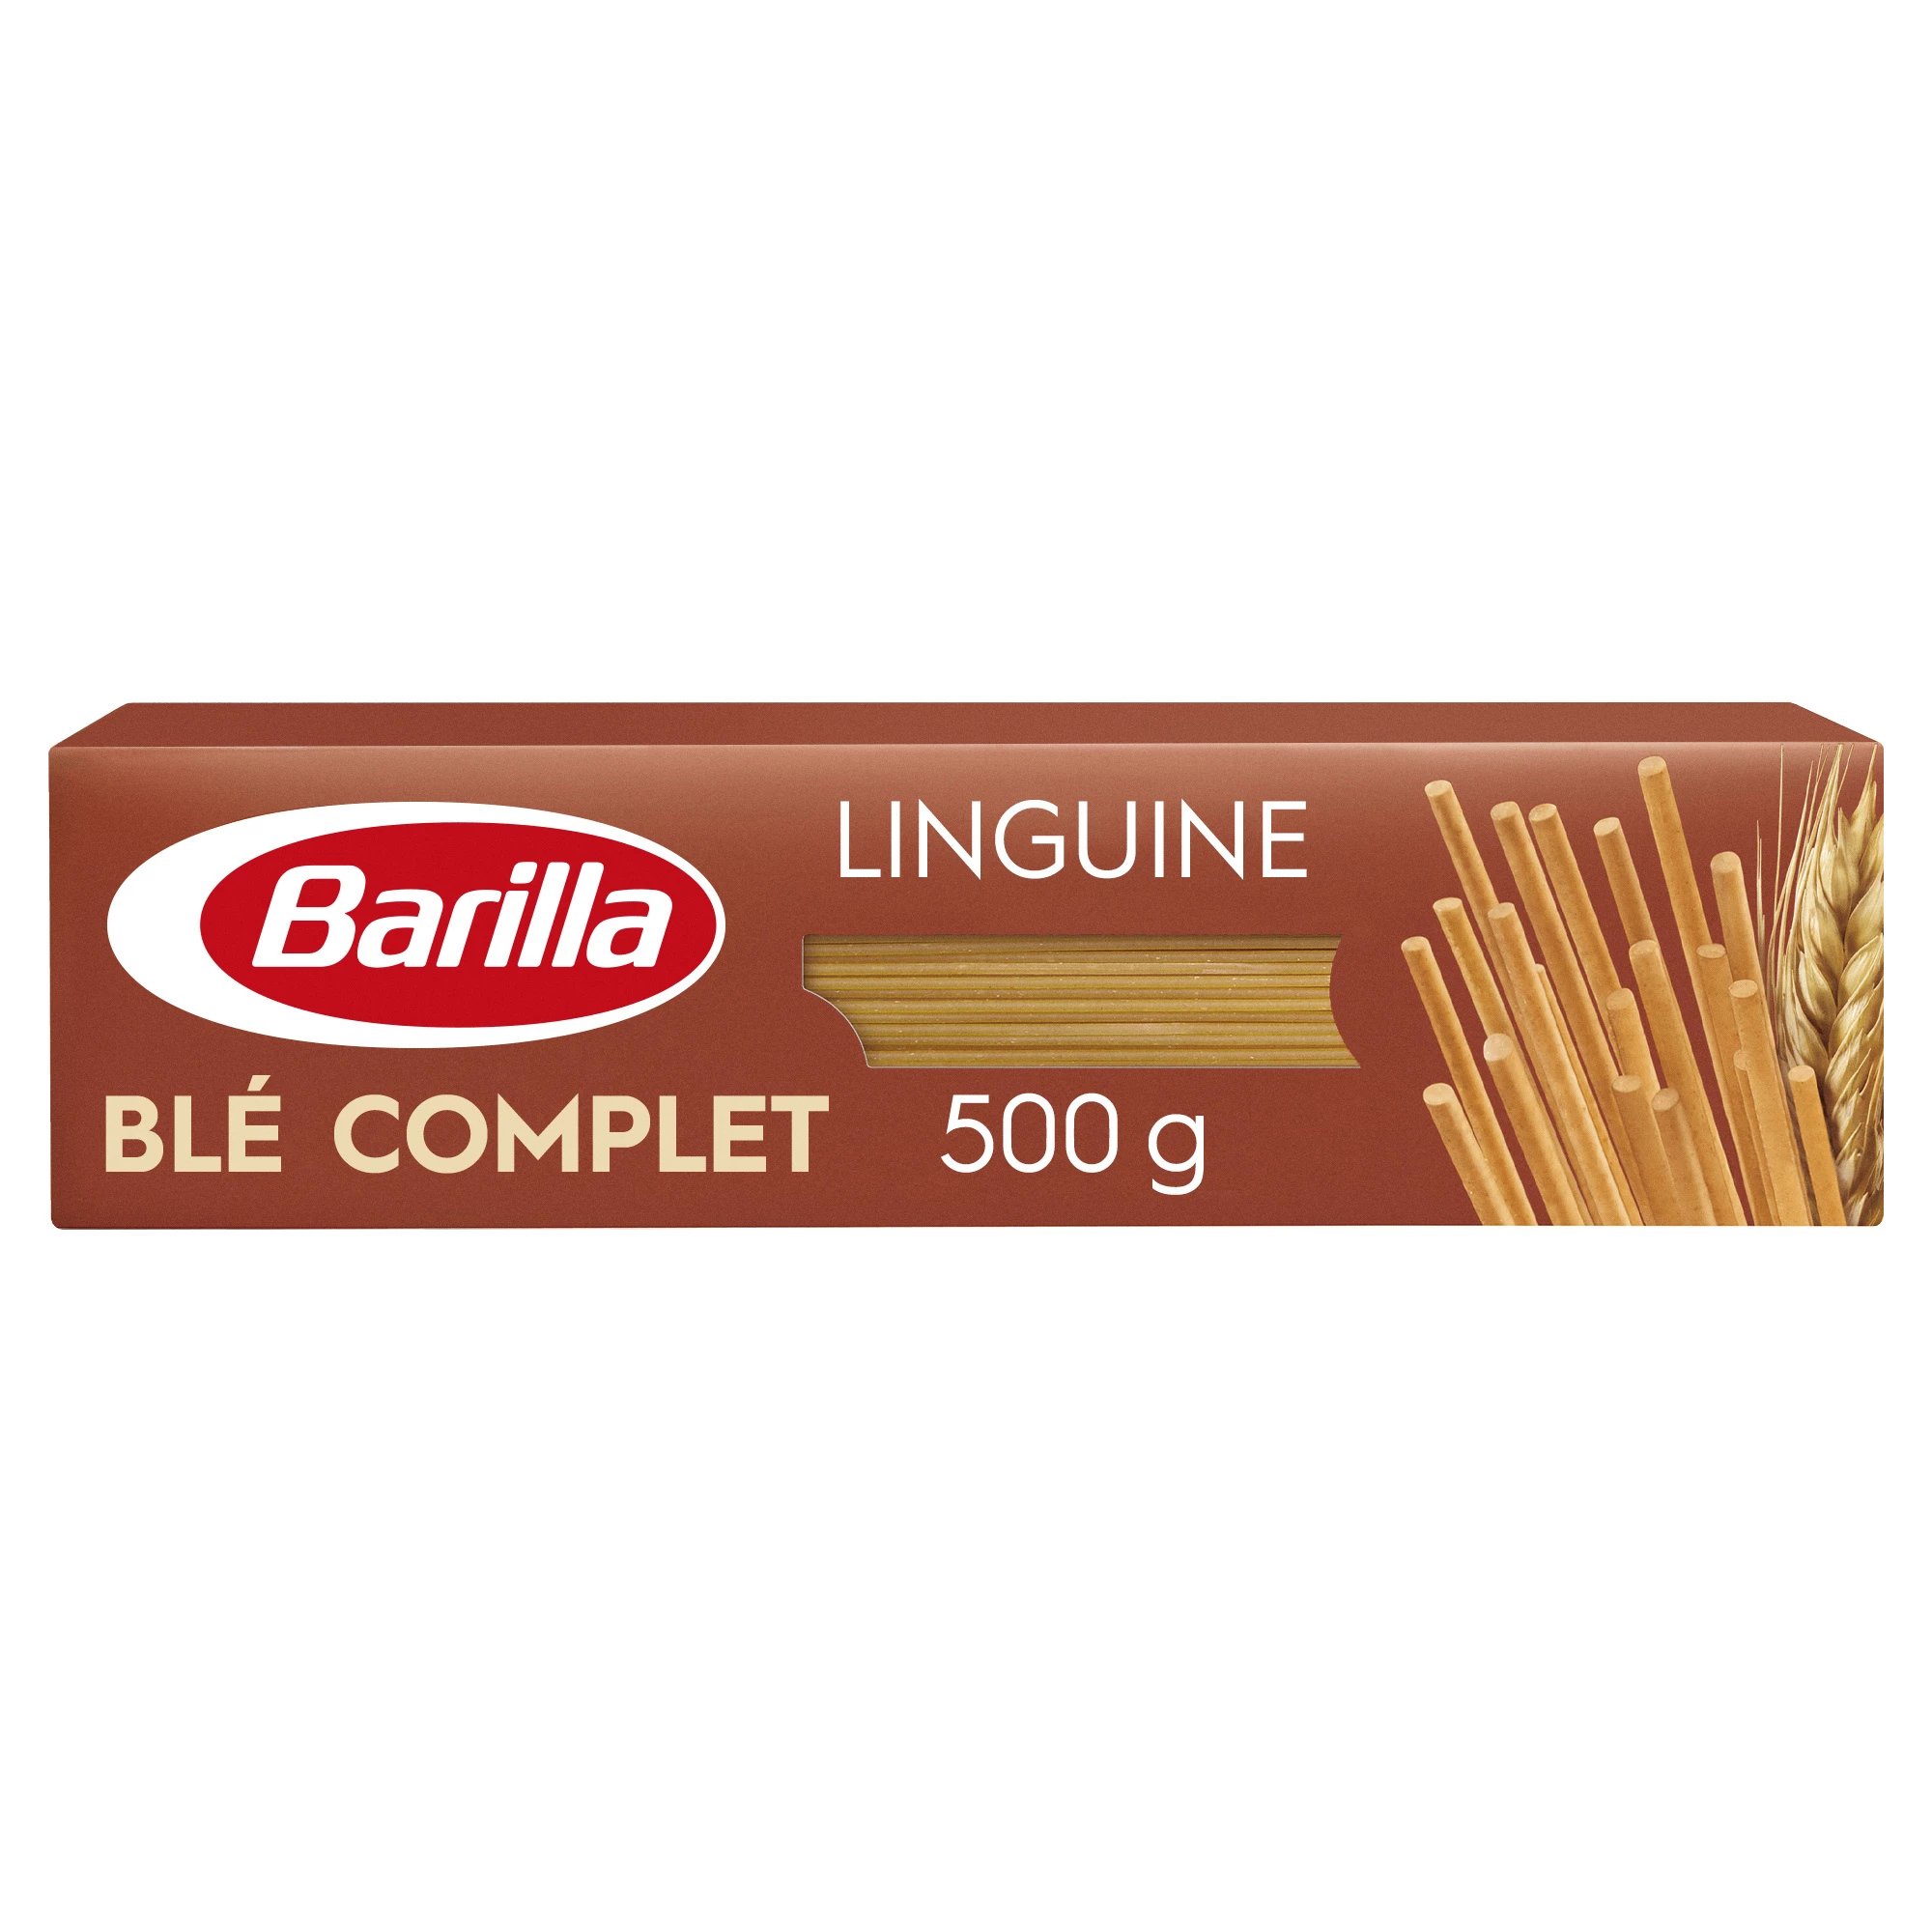 Linguini Ble Completo 500g